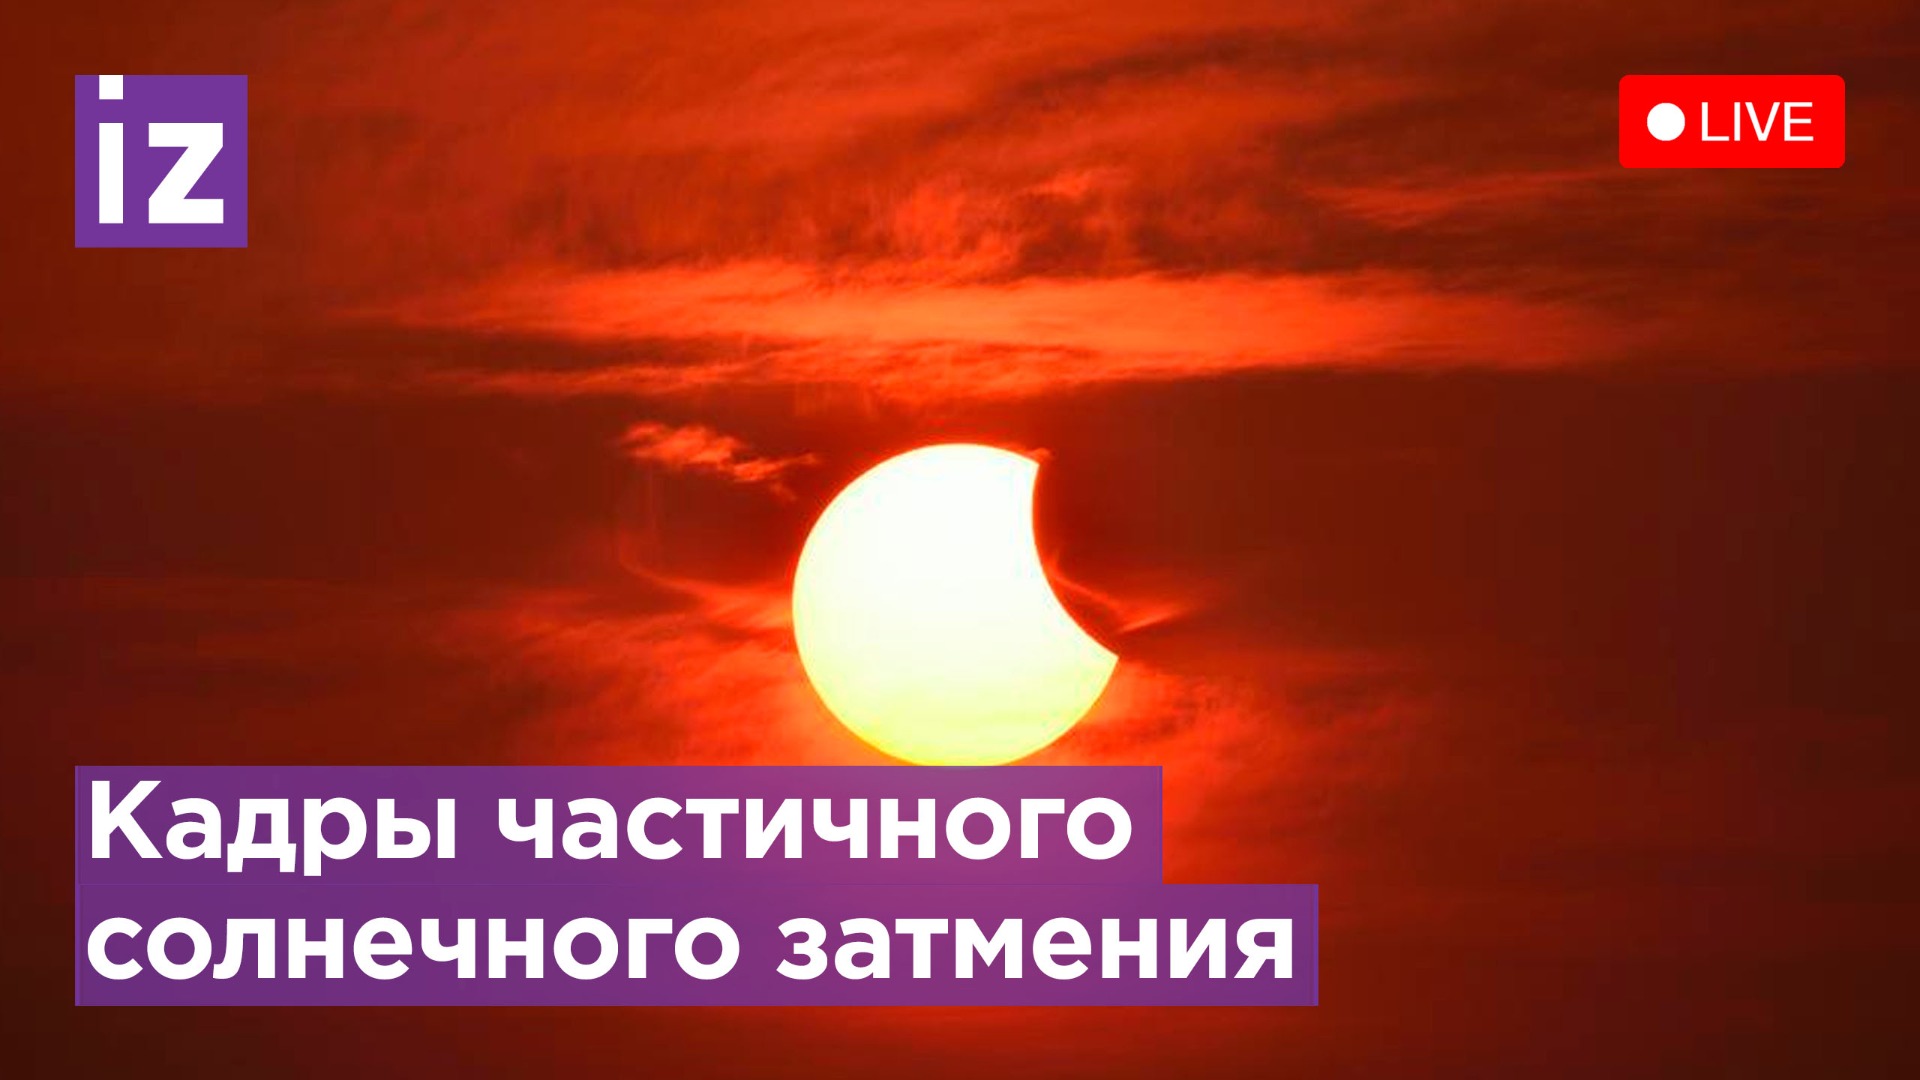 Солнечное затмение в новосибирске во сколько. Солнечное затмение 25 октября 2022 года. Затмение в октябре 2022. Солнечное затмение 2022 Новосибирск. Солнечное затмение 2022 в Москве.